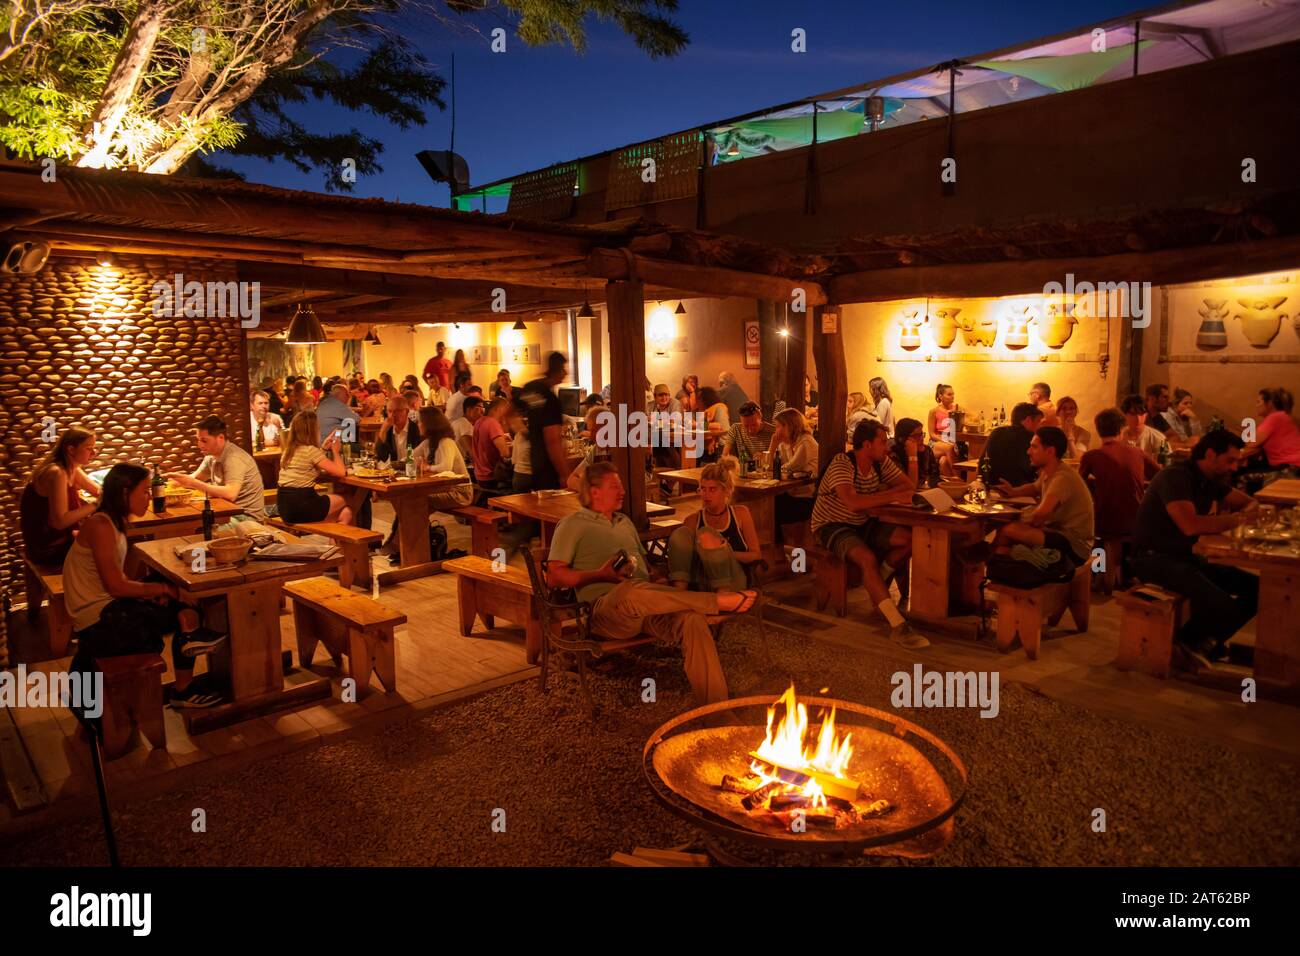 The busy Adobe restaurant at night,  San Pedro de Atacama, Atacama Desert, Antofagasta, Chile Stock Photo